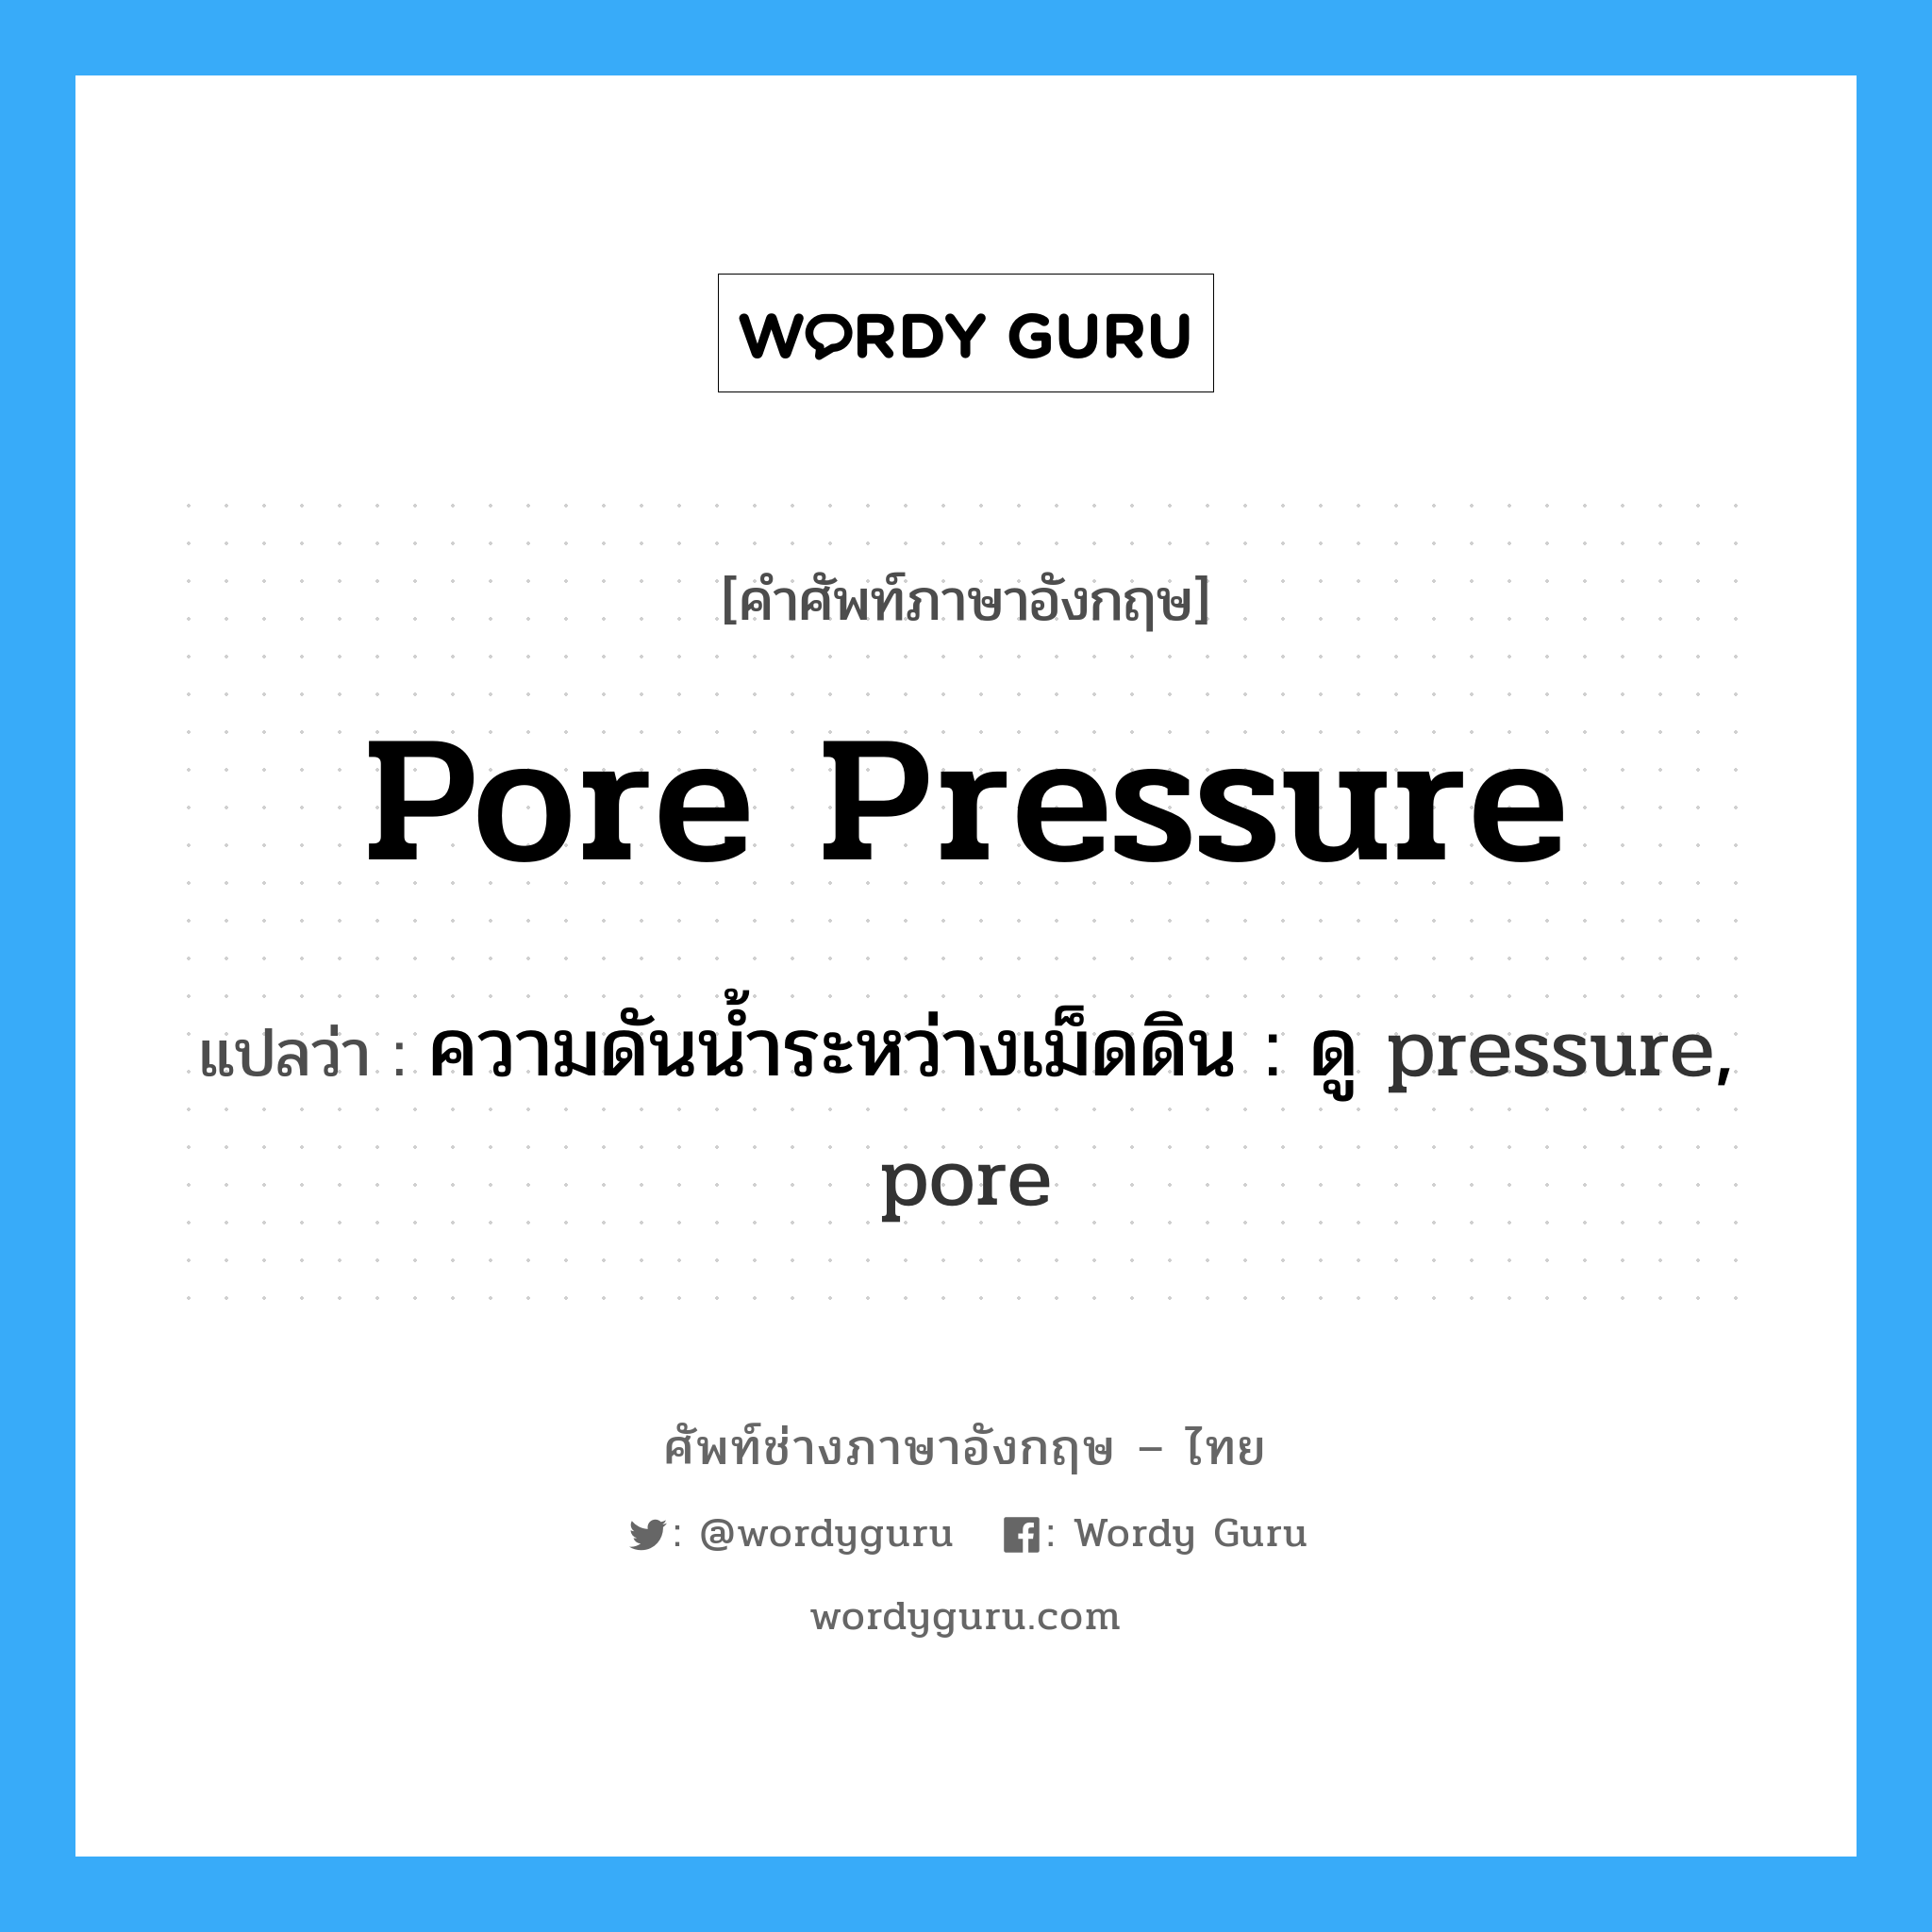 pore pressure แปลว่า?, คำศัพท์ช่างภาษาอังกฤษ - ไทย pore pressure คำศัพท์ภาษาอังกฤษ pore pressure แปลว่า ความดันน้ำระหว่างเม็ดดิน : ดู pressure, pore